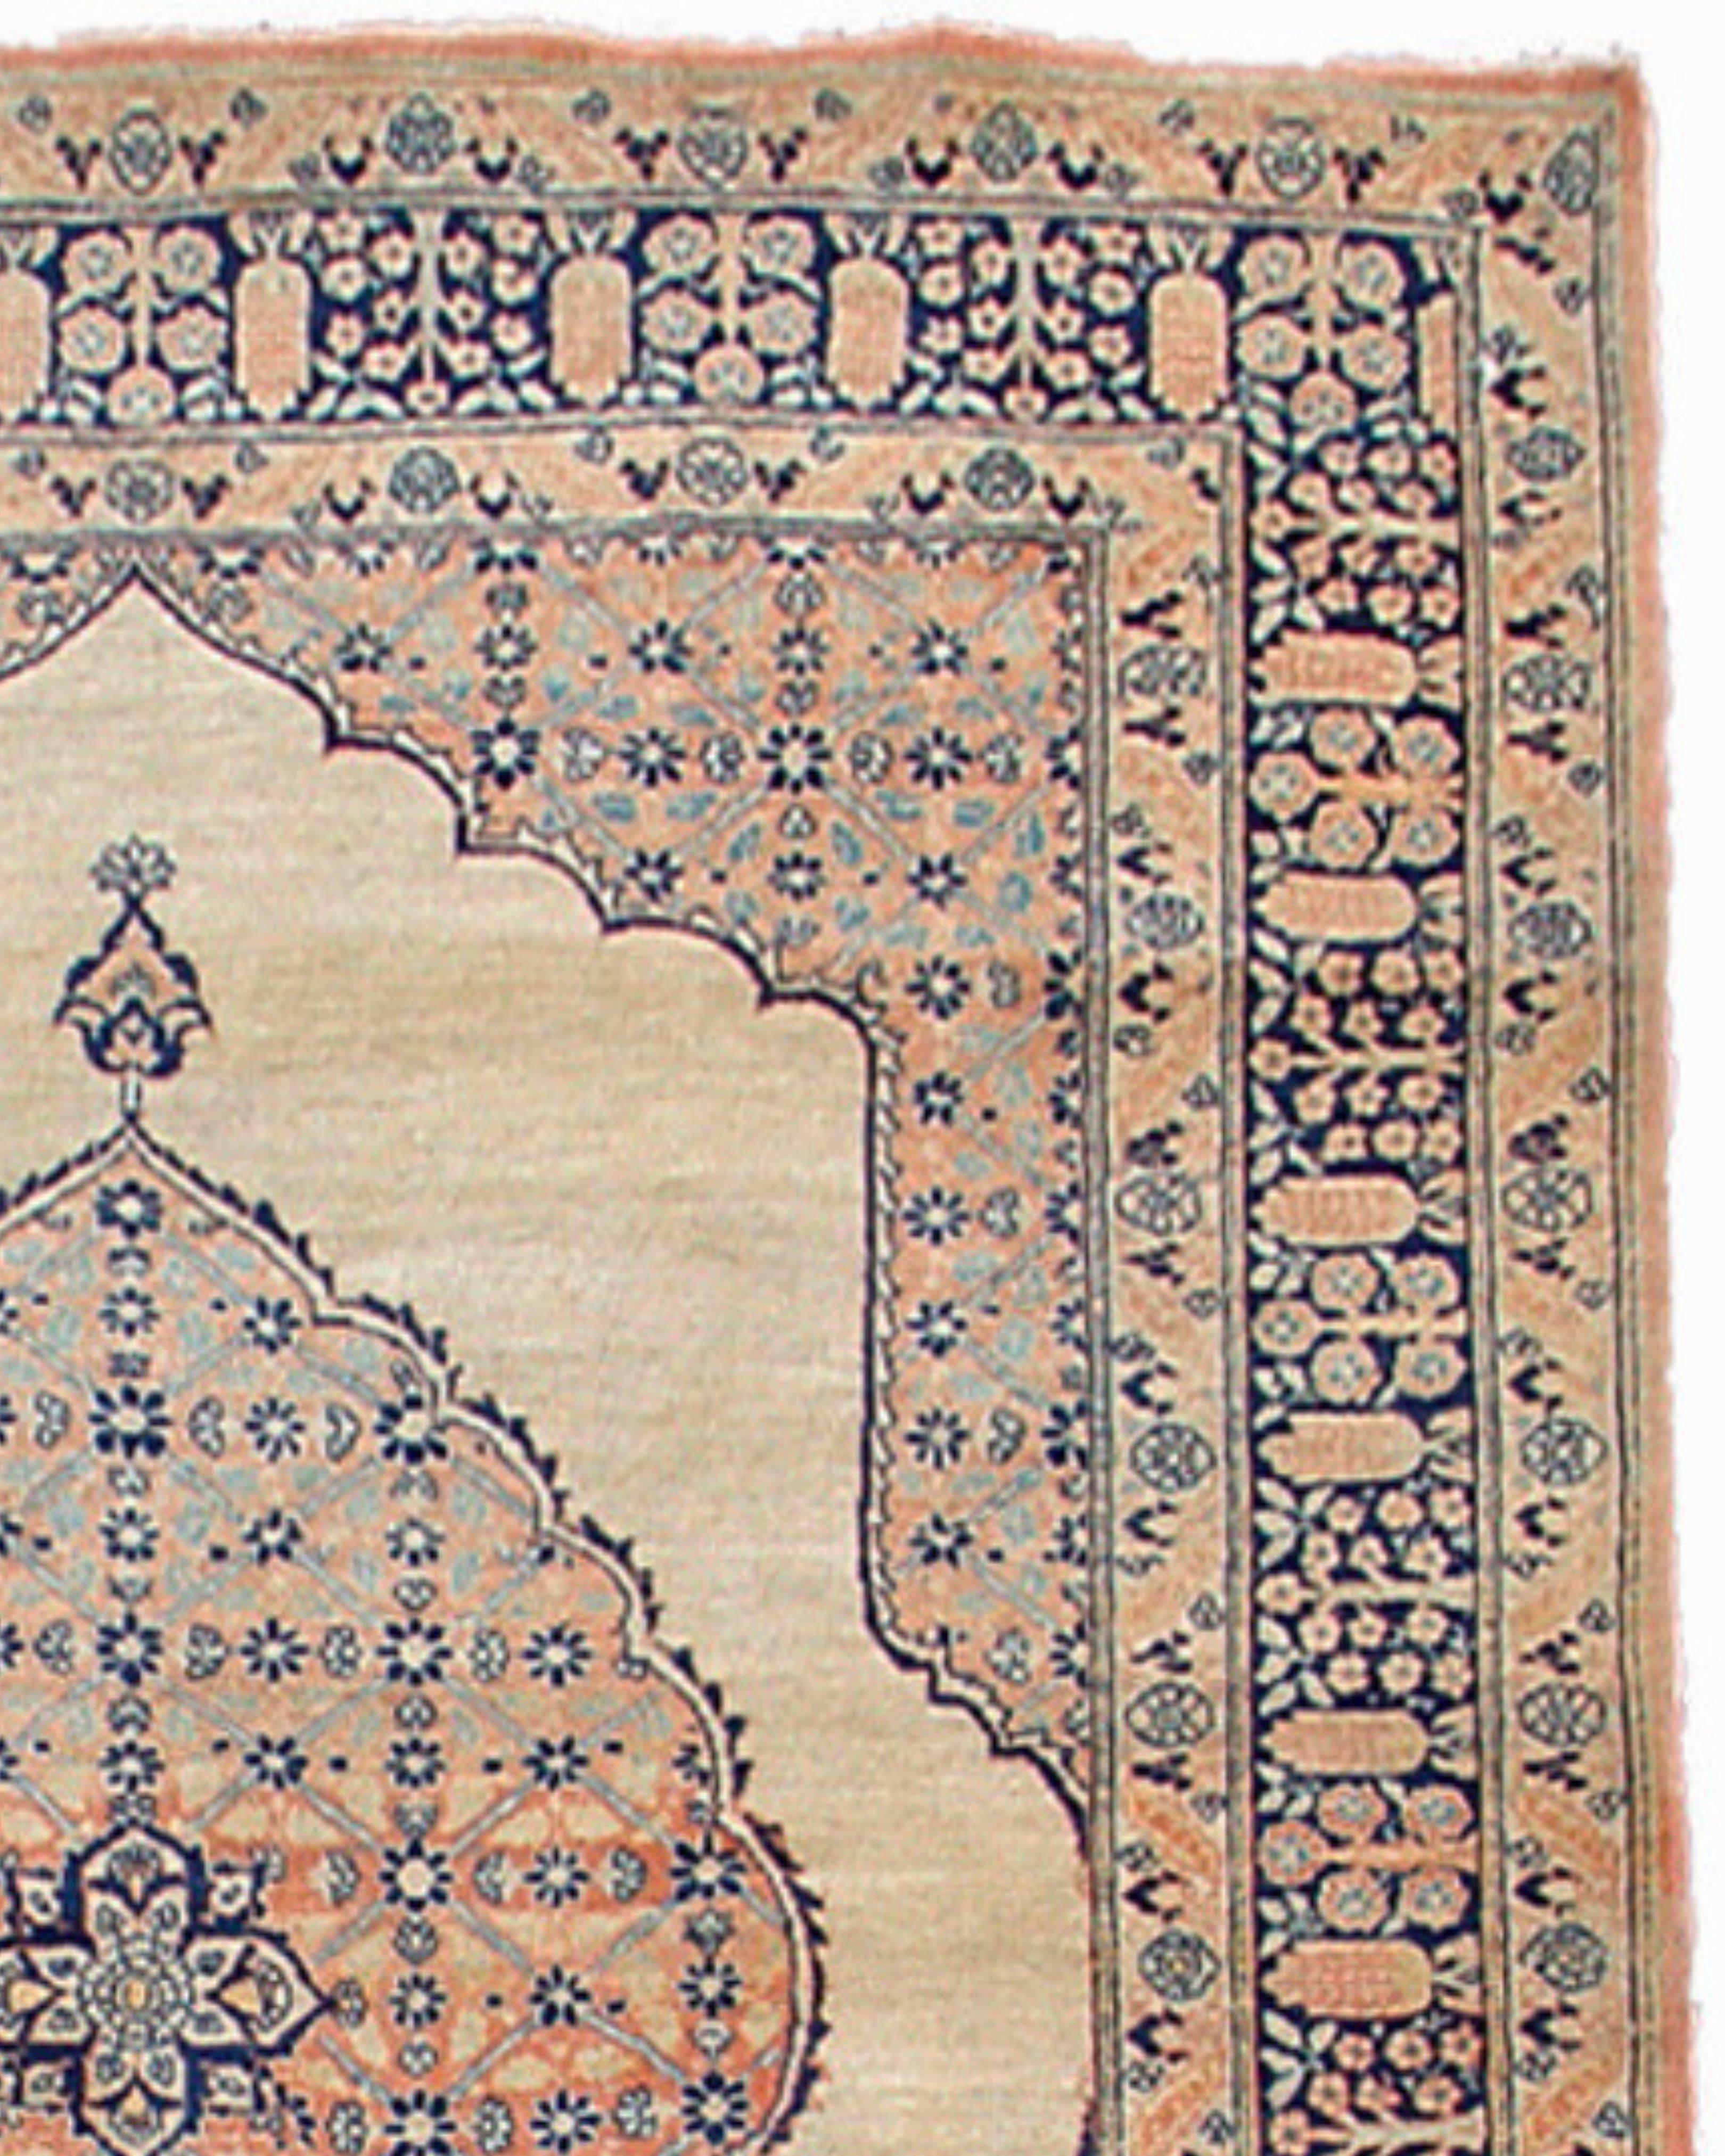 Tapis persan antique de Tabriz, 19e siècle

Ce tapis Tabriz antique traditionnel du nord-ouest de la Perse présente un médaillon elliptique proéminent flottant sur un champ ivoire. Bien que datant de la fin du XIXe siècle, le médaillon et les pièces